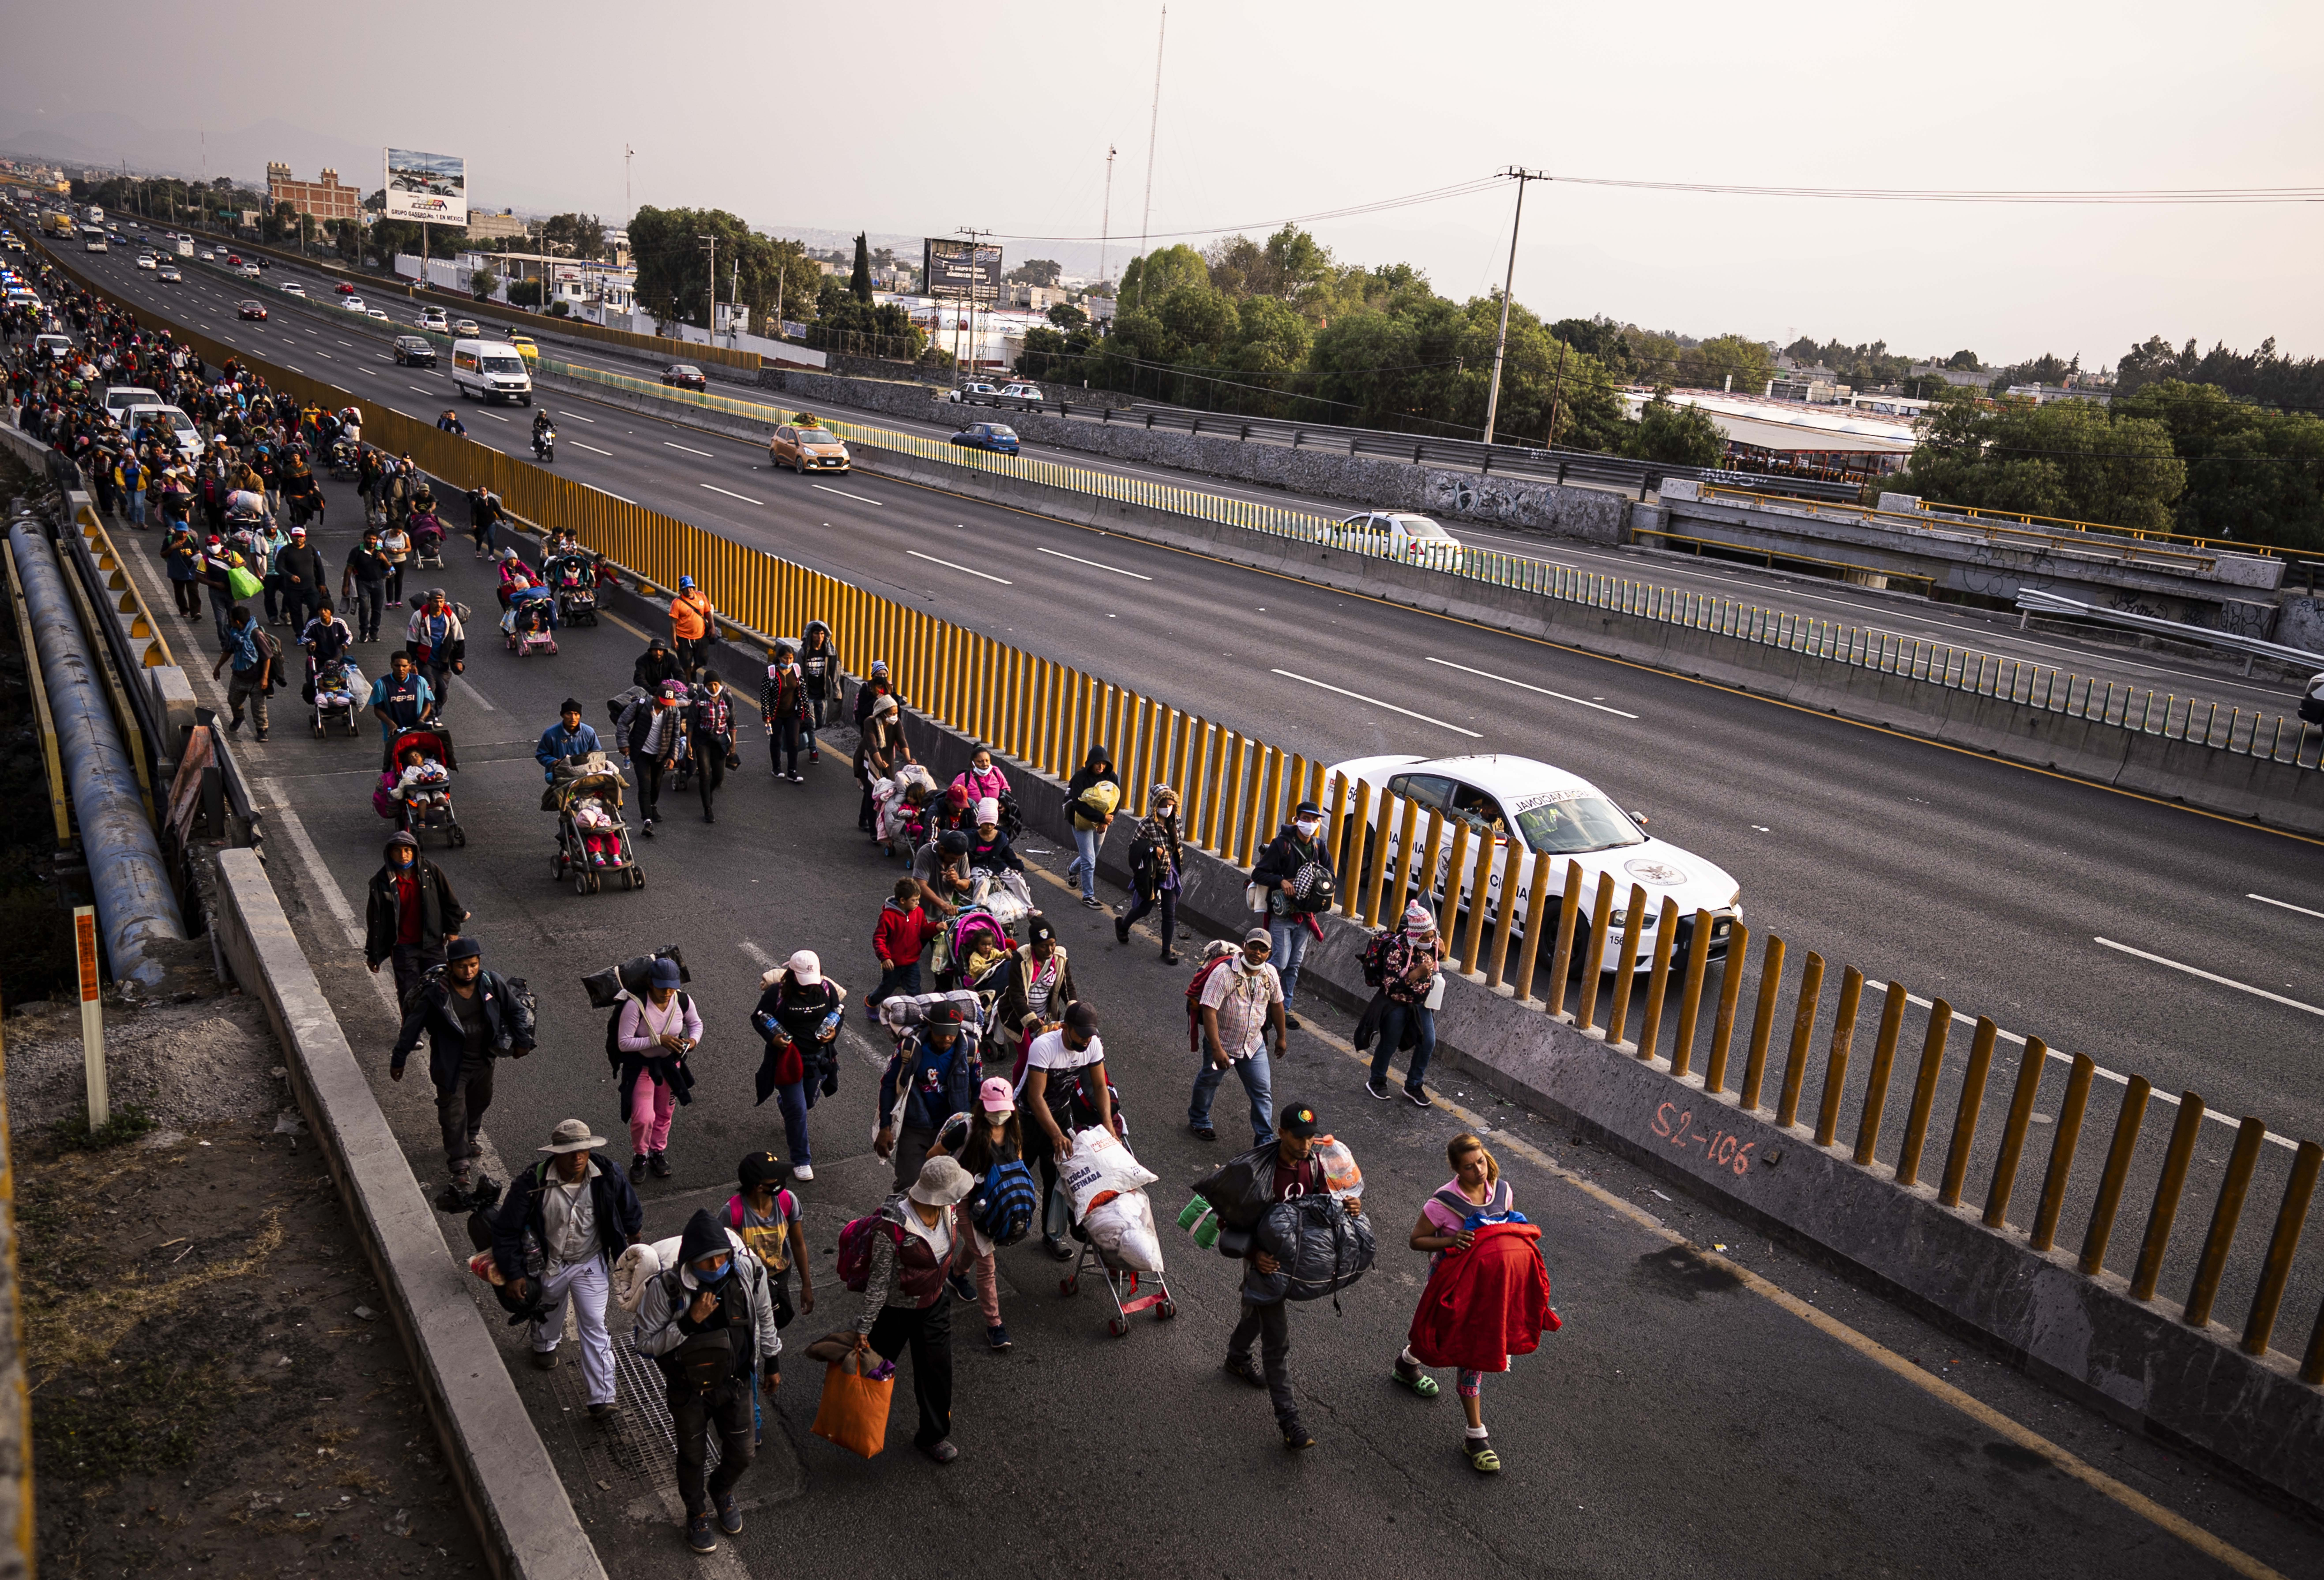 NEGARA BAGIAN MEKSIKO, Para migran yang ikut dalam sebuah kelompok karavan melintas di jalan raya Meksiko-Puebla di Valle de Chalco, Negara Bagian Meksiko, Meksiko, pada 12 Desember 2021. (Xinhua/David de la Paz)